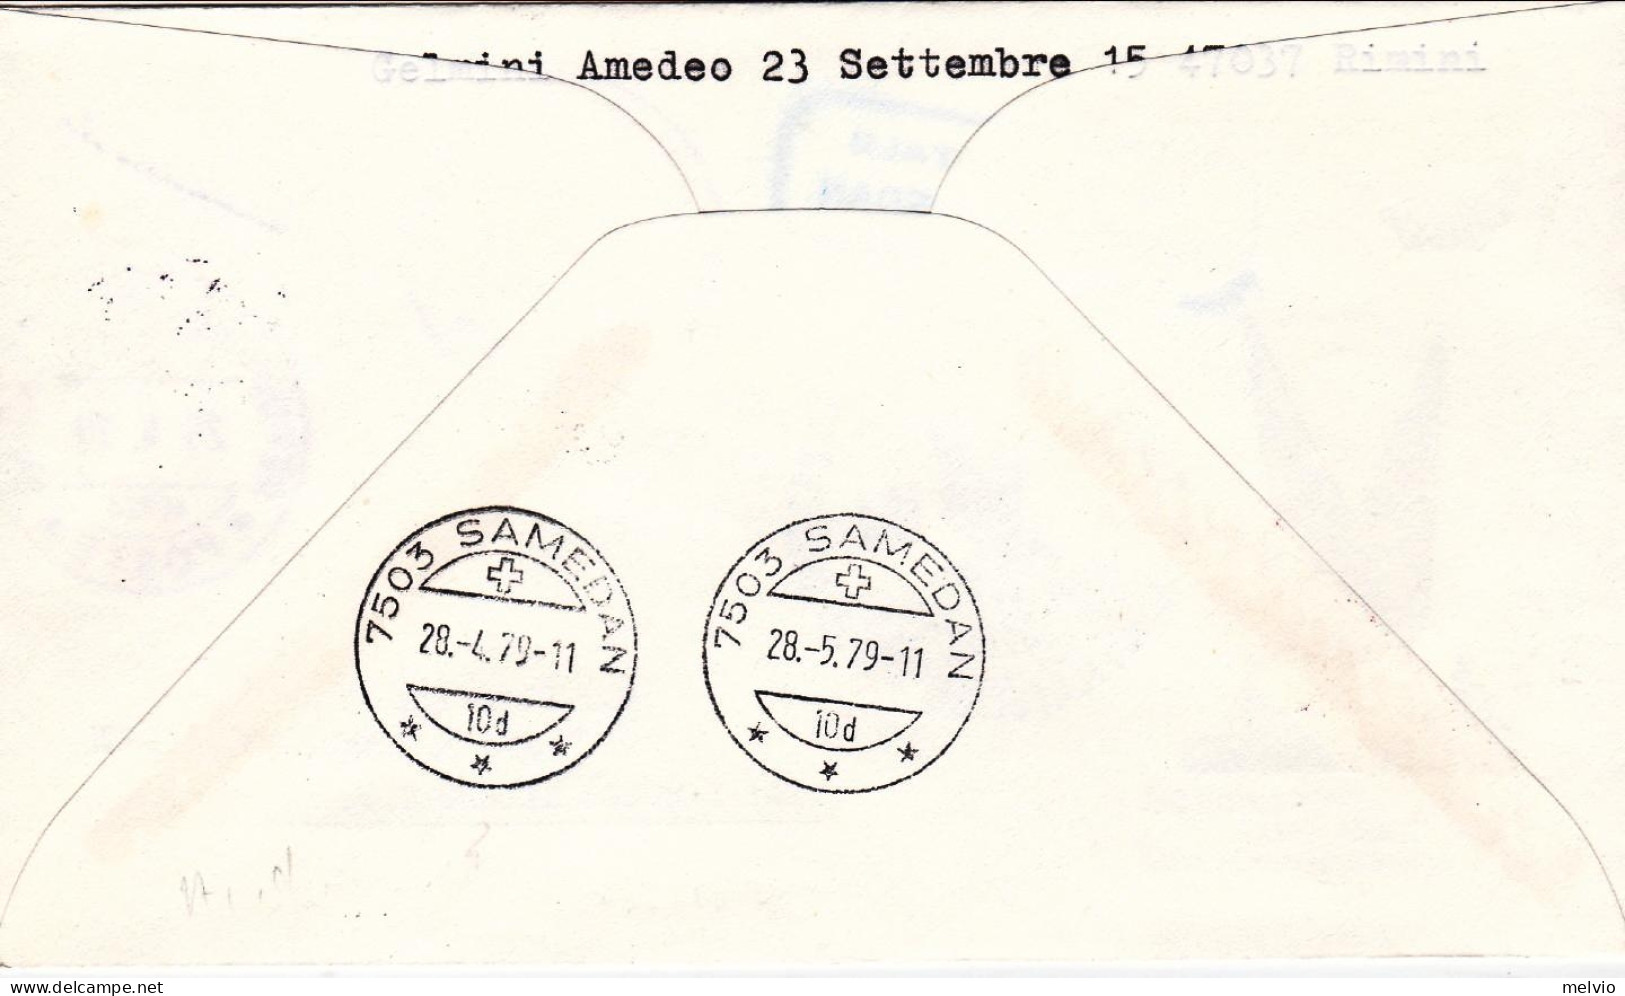 1979-San Marino Raccomandata Volo Postale Percorso Milano Samedan Del 28 Aprile - Luftpost